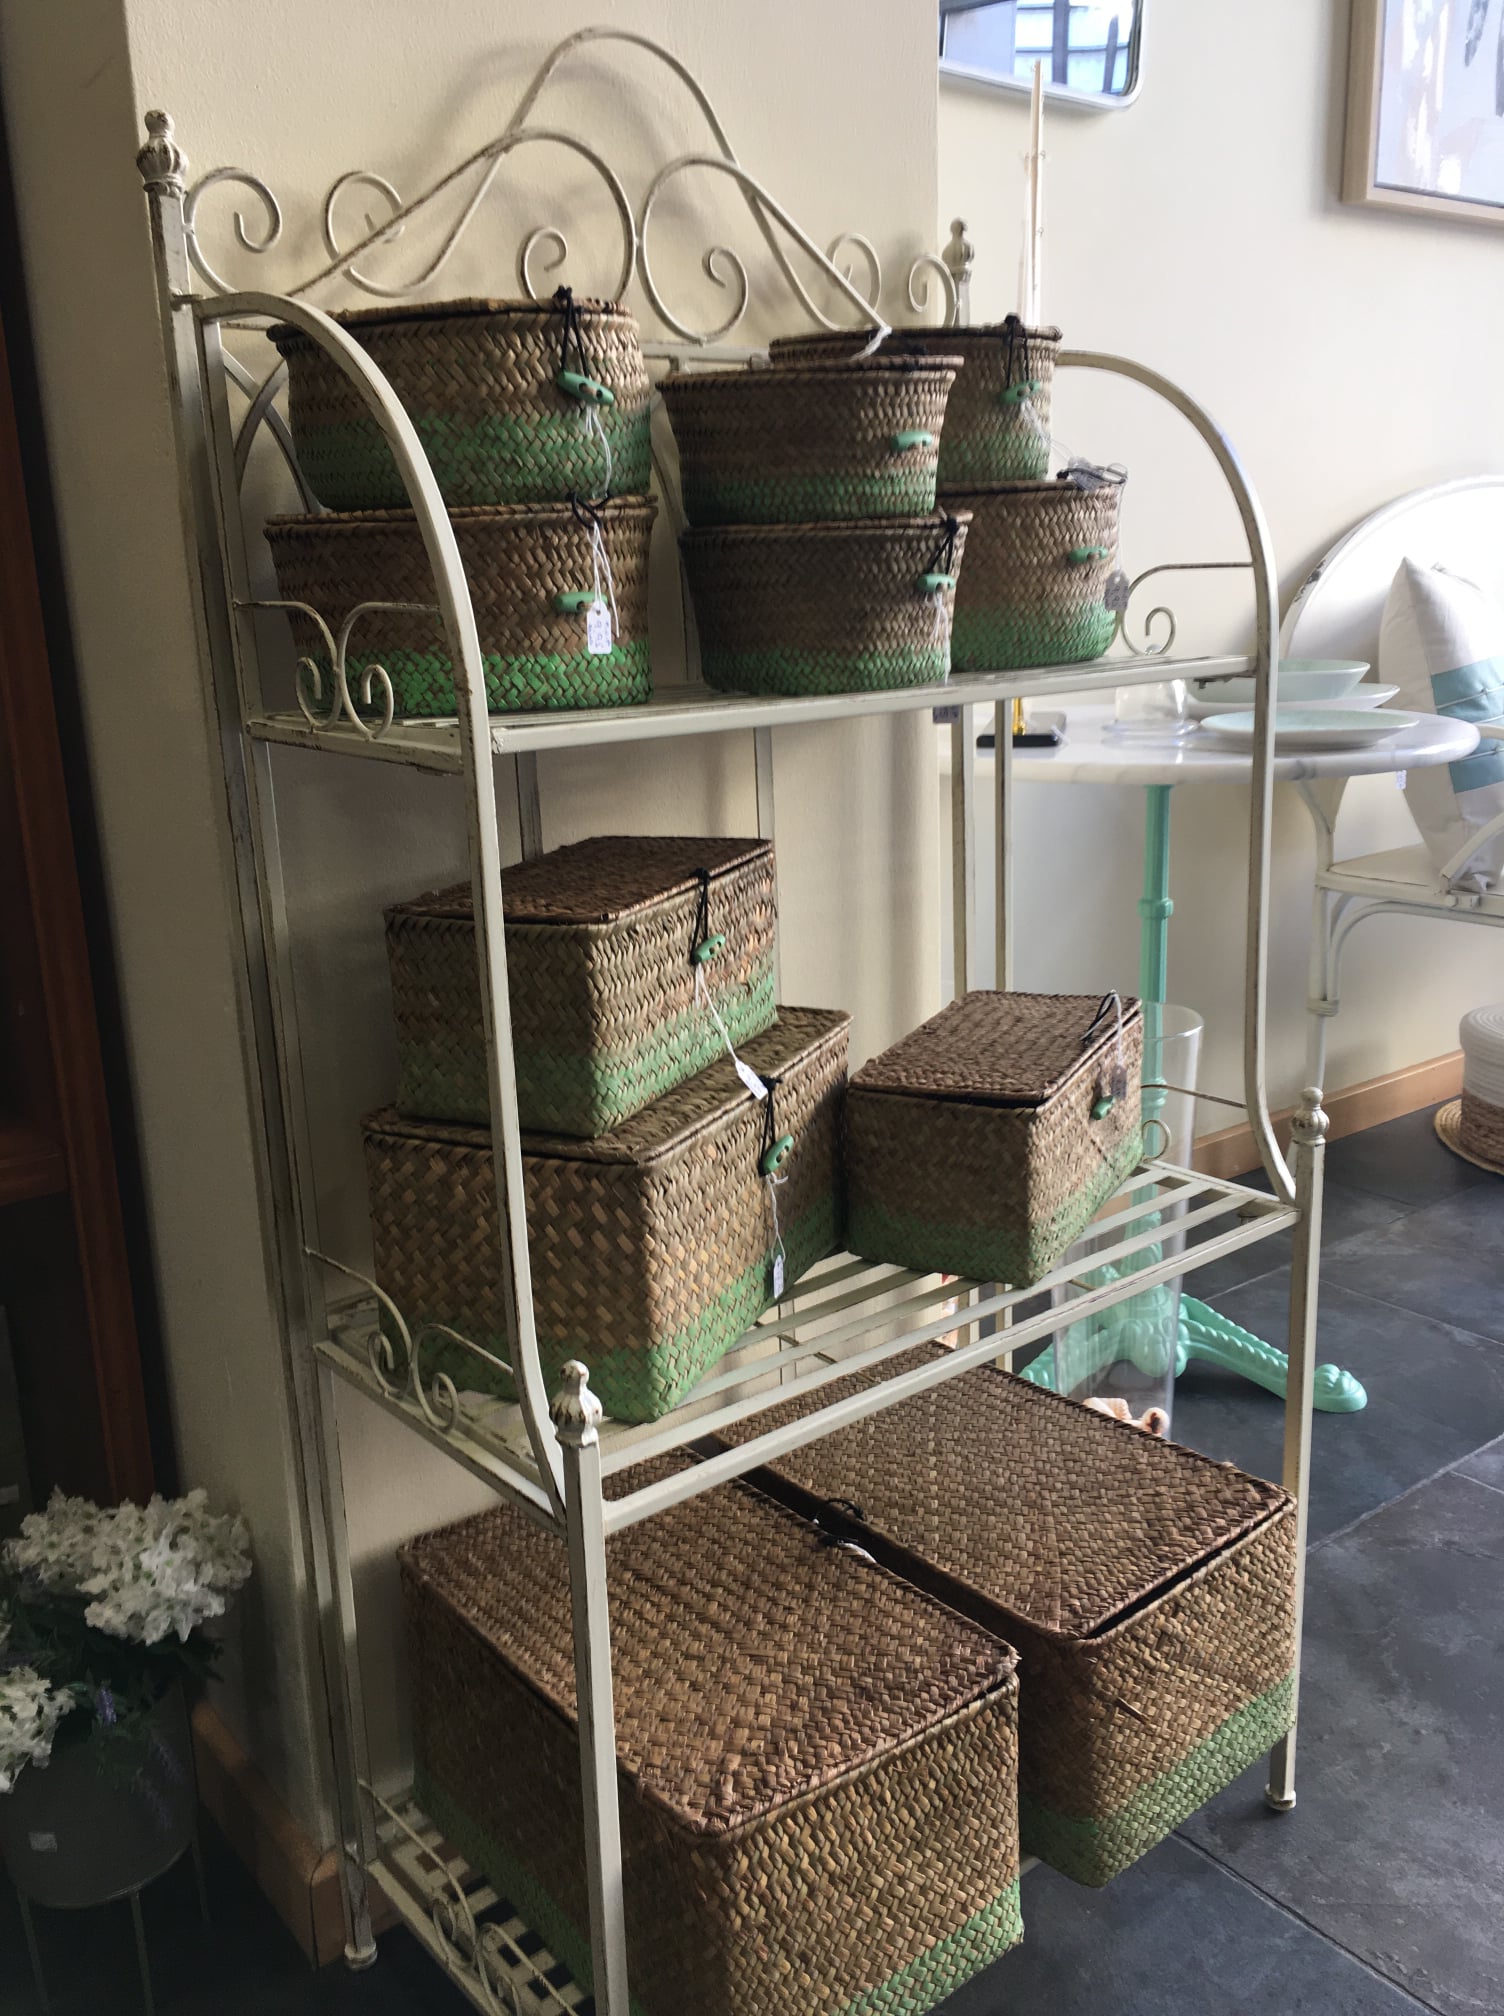 cajas y cestas en estante- Tienda de decoración en Llanes